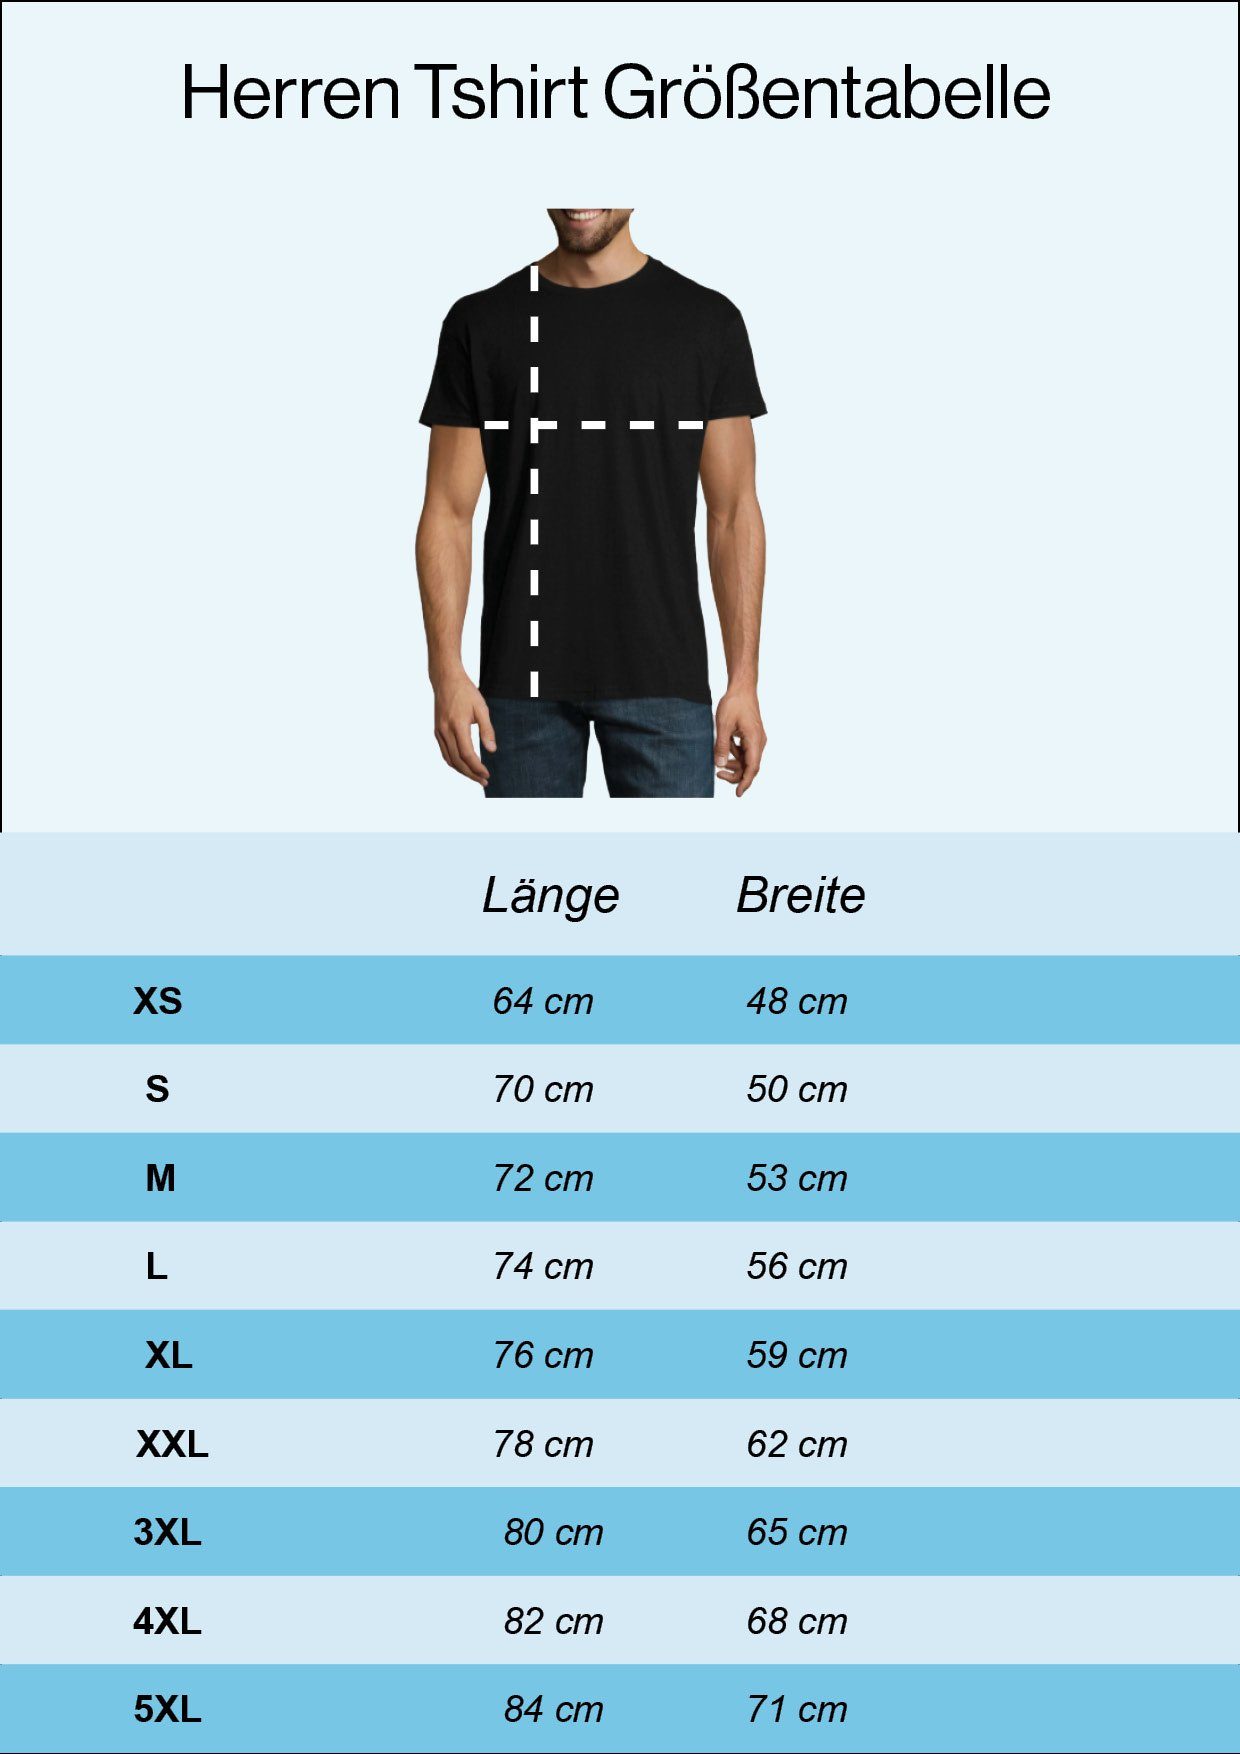 Youth Designz T-Shirt geht Weiss Legende Rente Herren mit Die in Trendigem Frontdruck Shirt